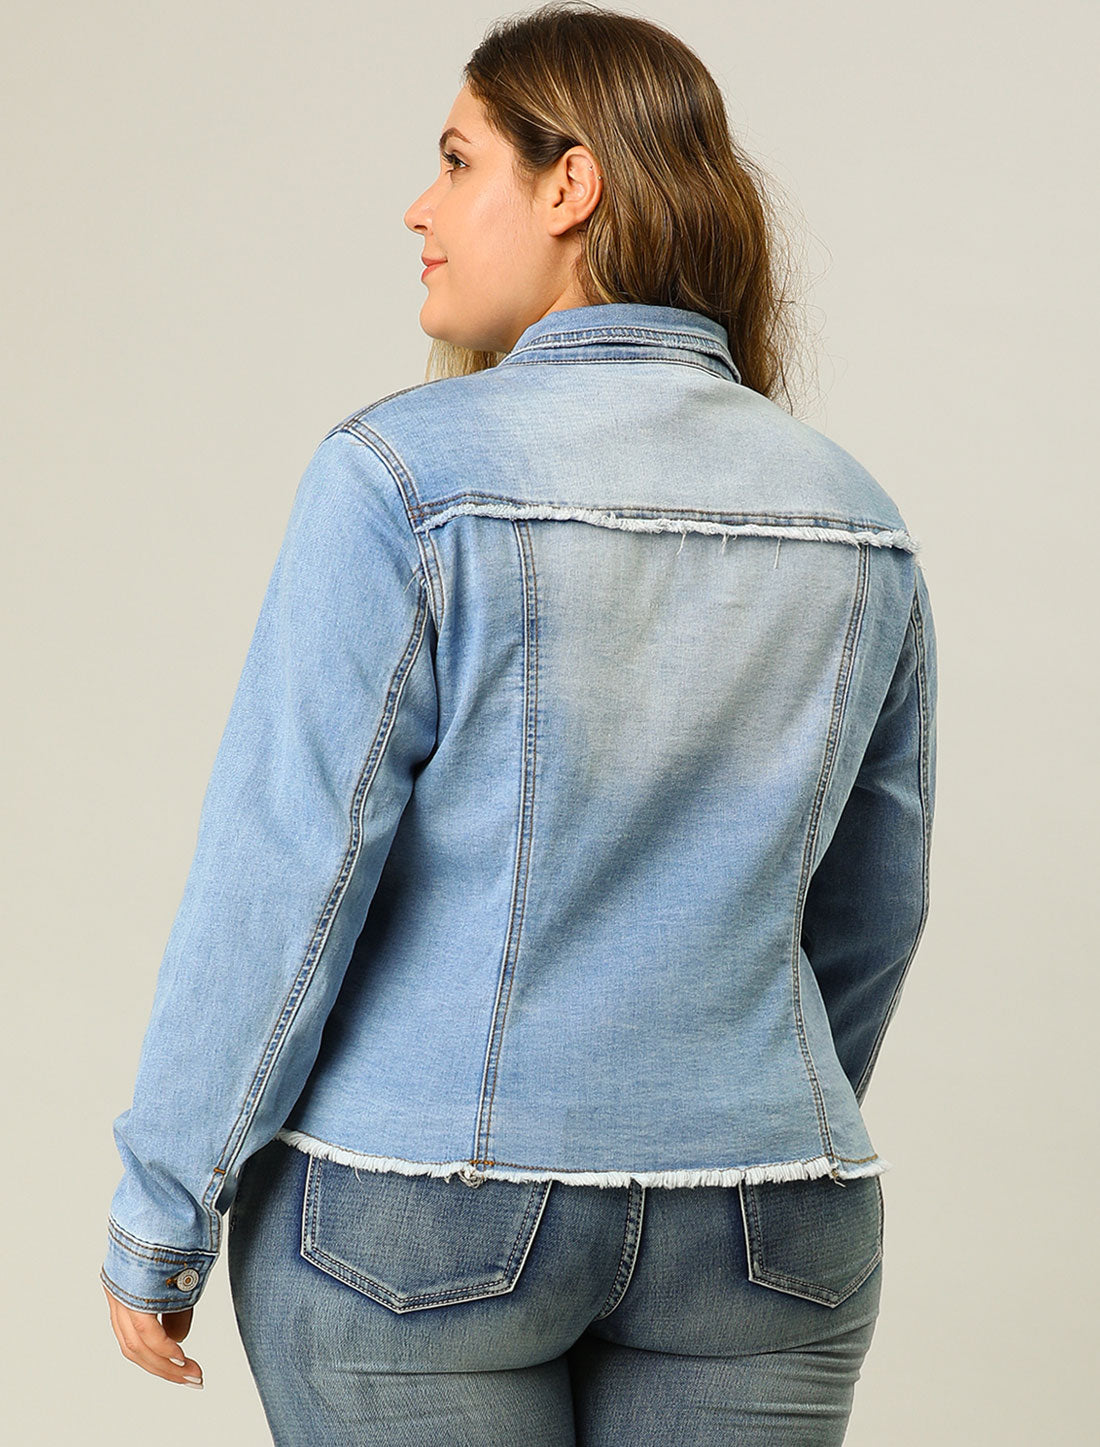 Agnes Orinda Plus Size Classic Washed Front Frayed Denim Jacket Light Blue